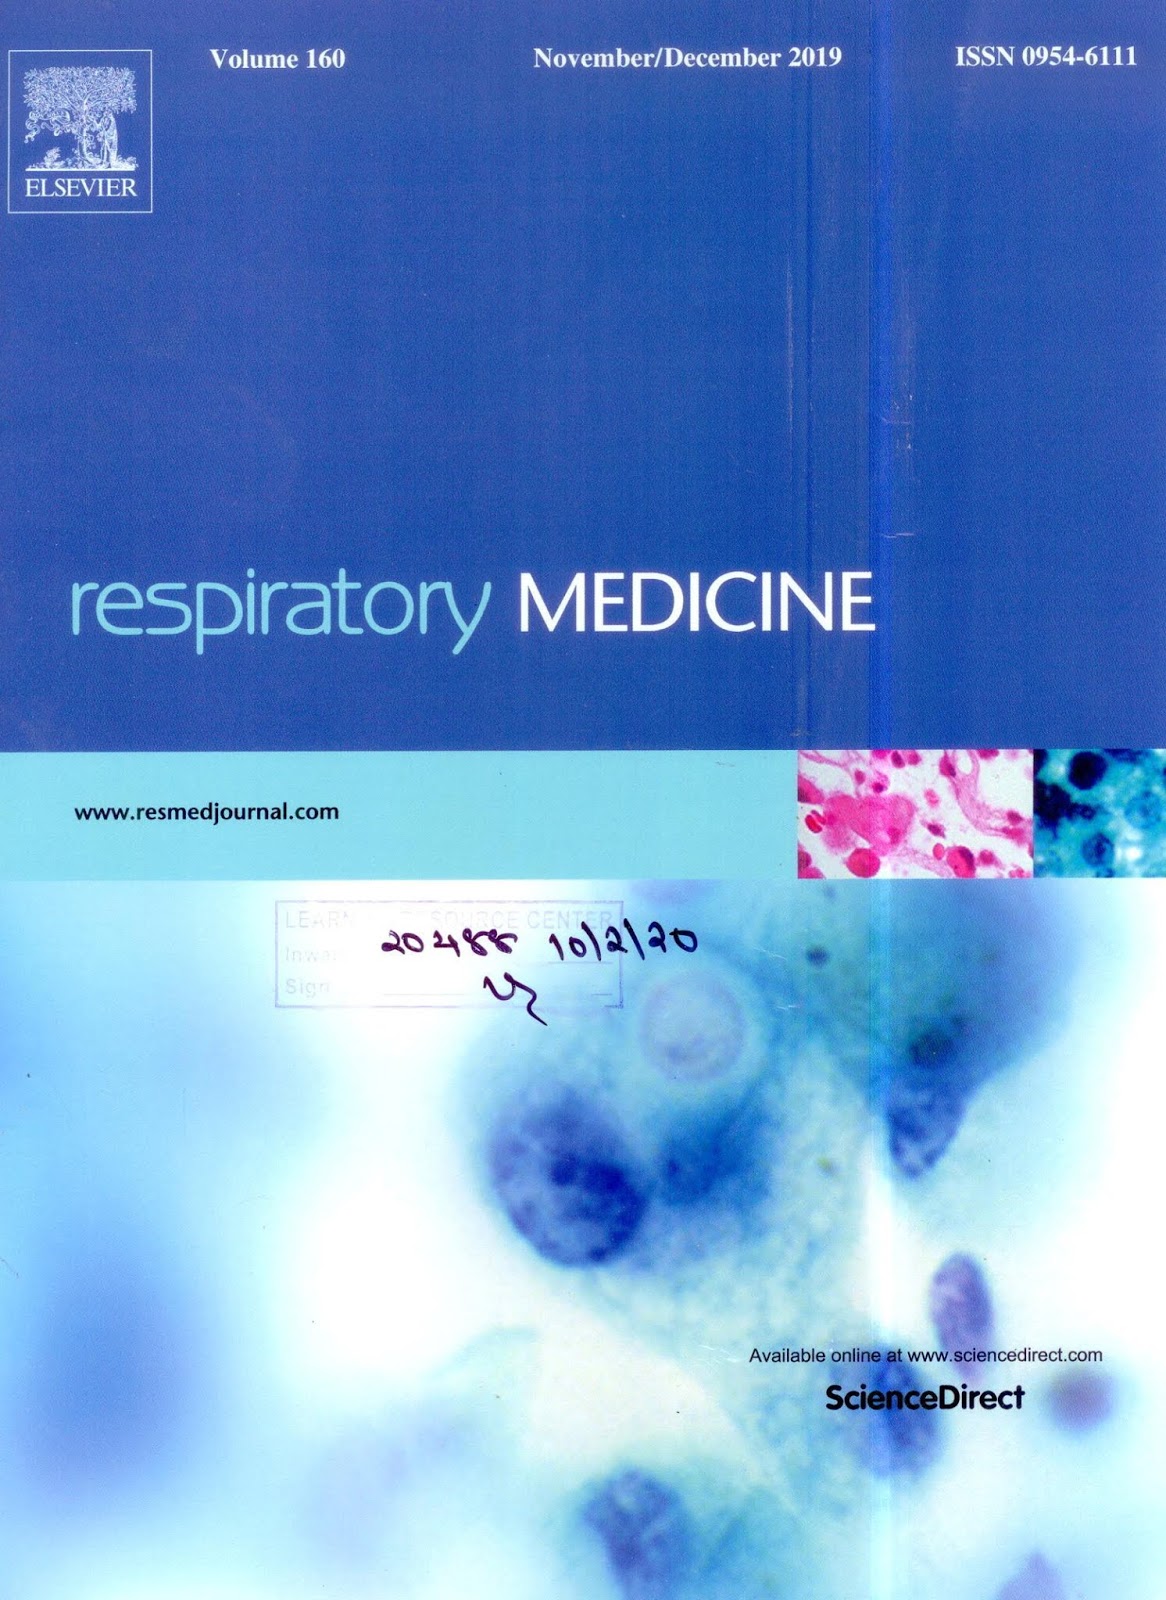 https://www.sciencedirect.com/journal/respiratory-medicine/vol/160/suppl/C